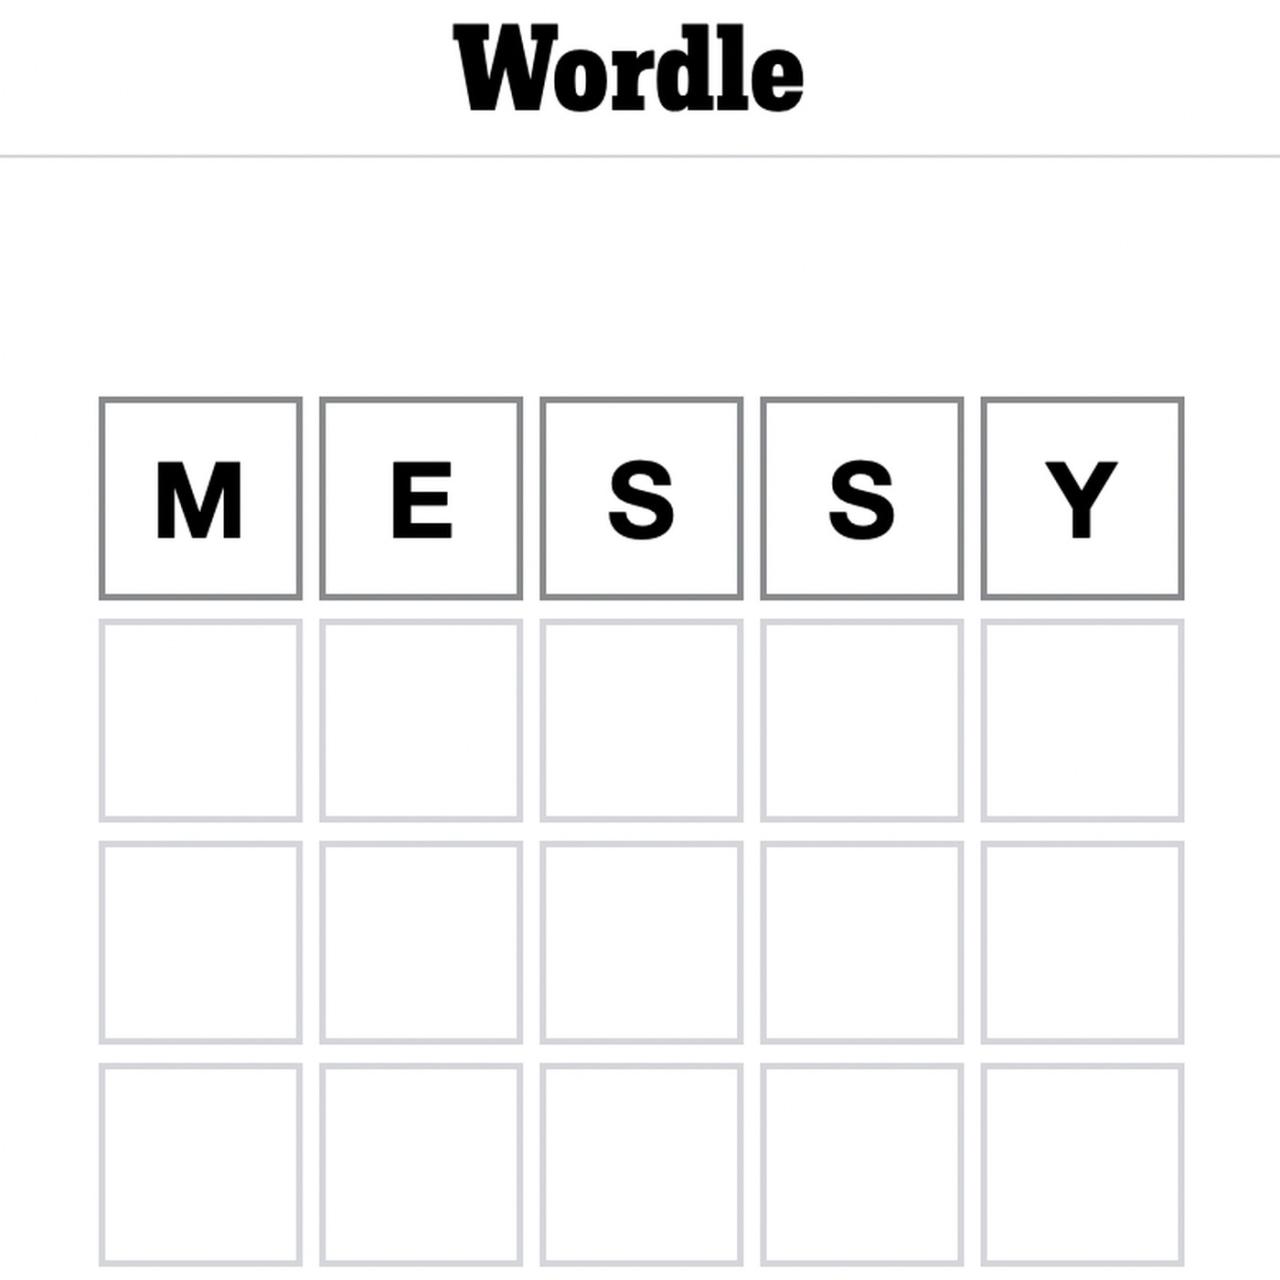 Wordles